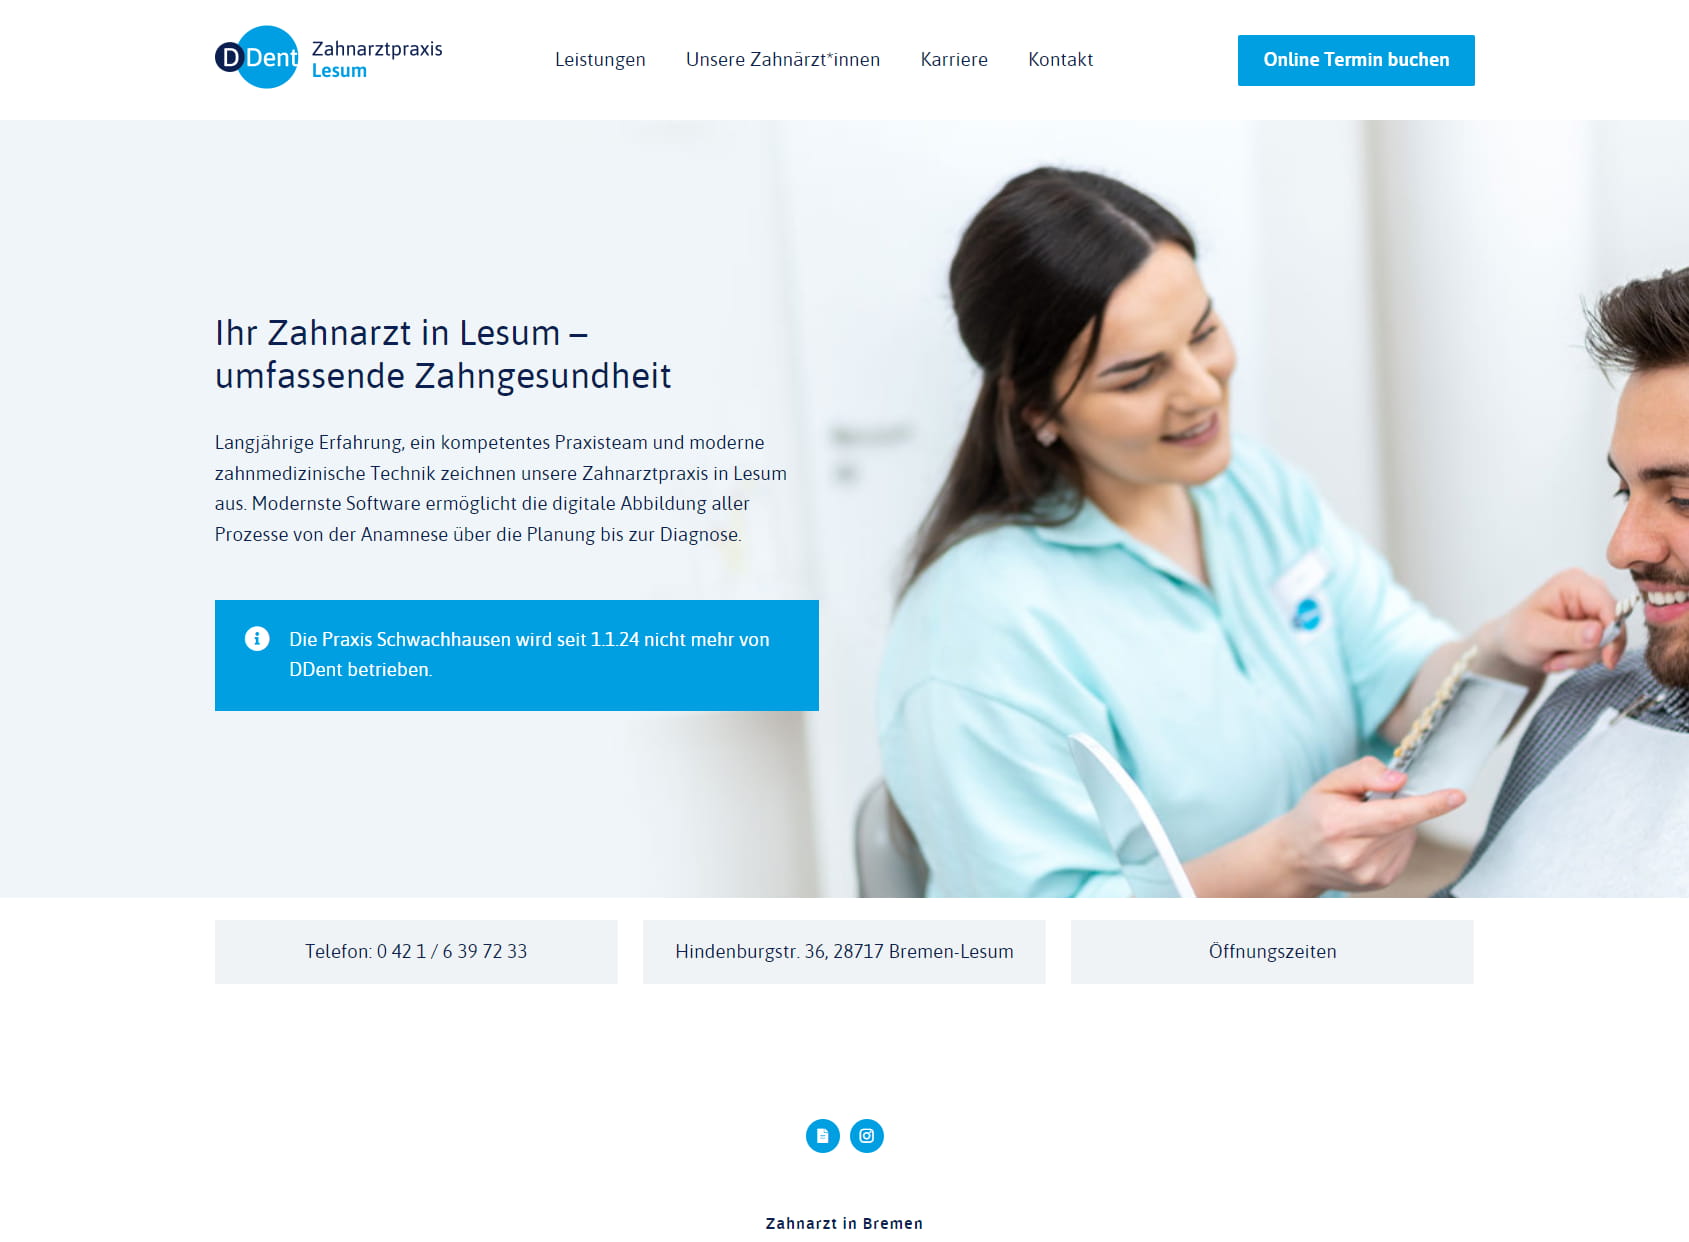 Zahnarztpraxis Bremen-Lesum | DDent Praxisverbund